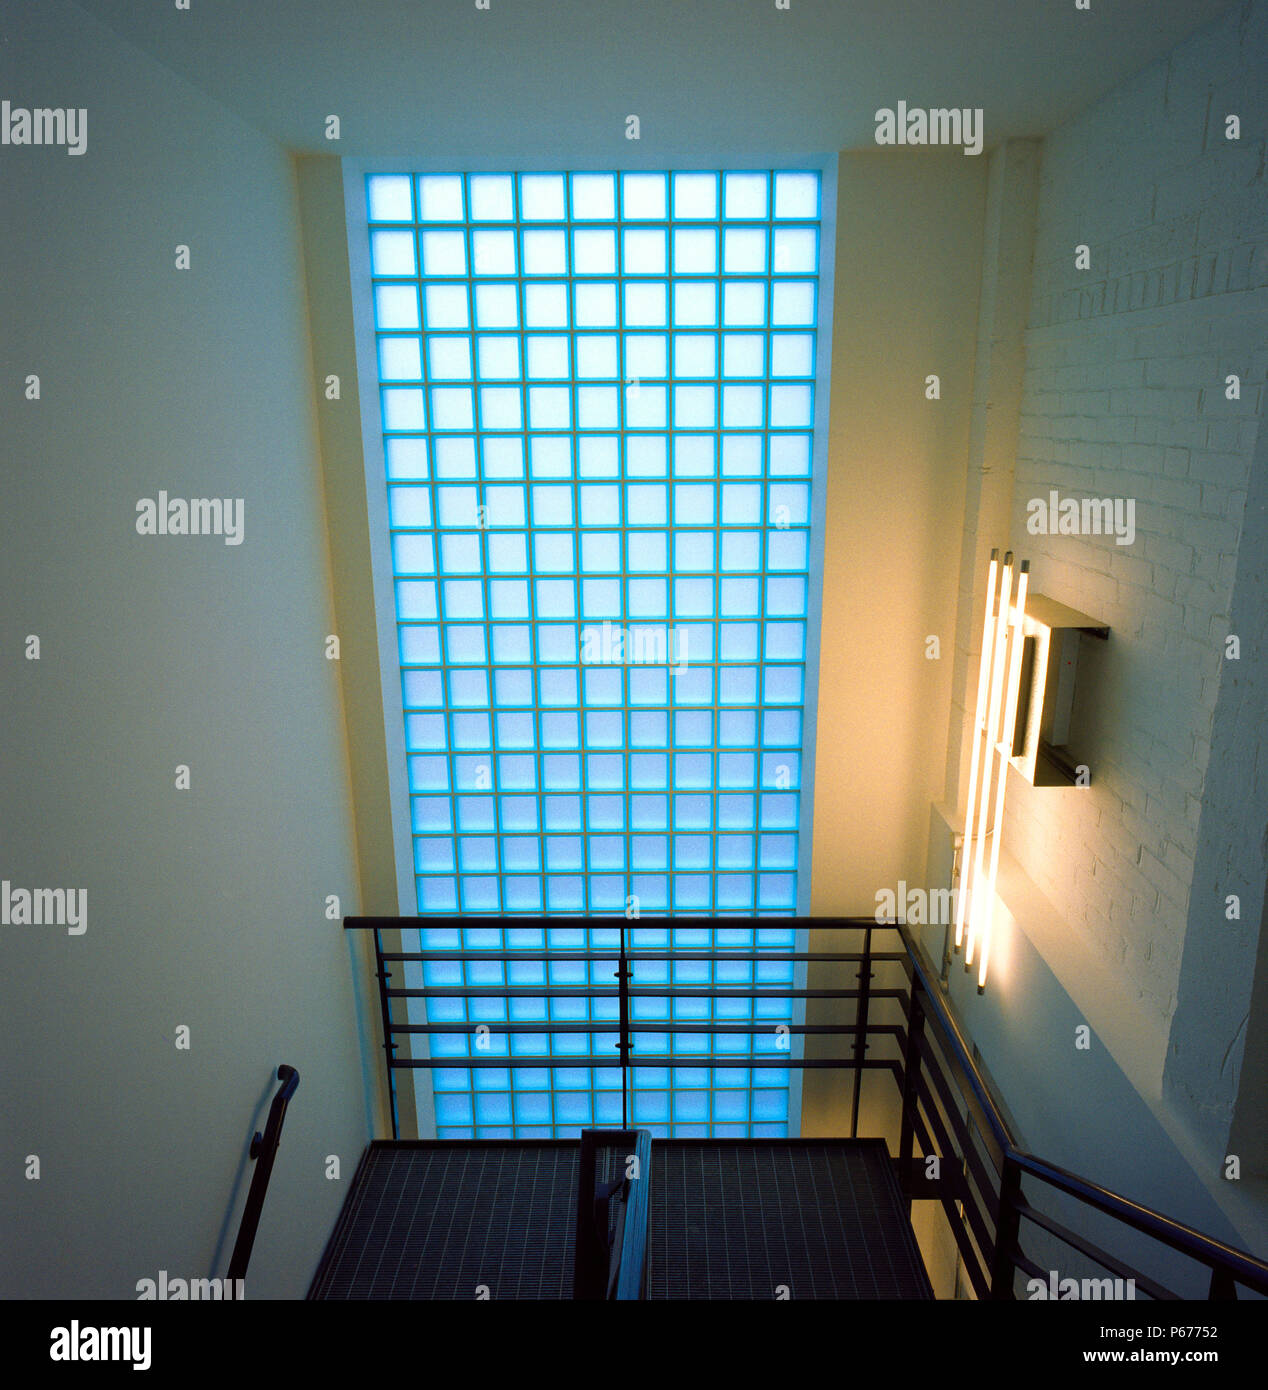 Mur de briques de verre dans un escalier Photo Stock - Alamy